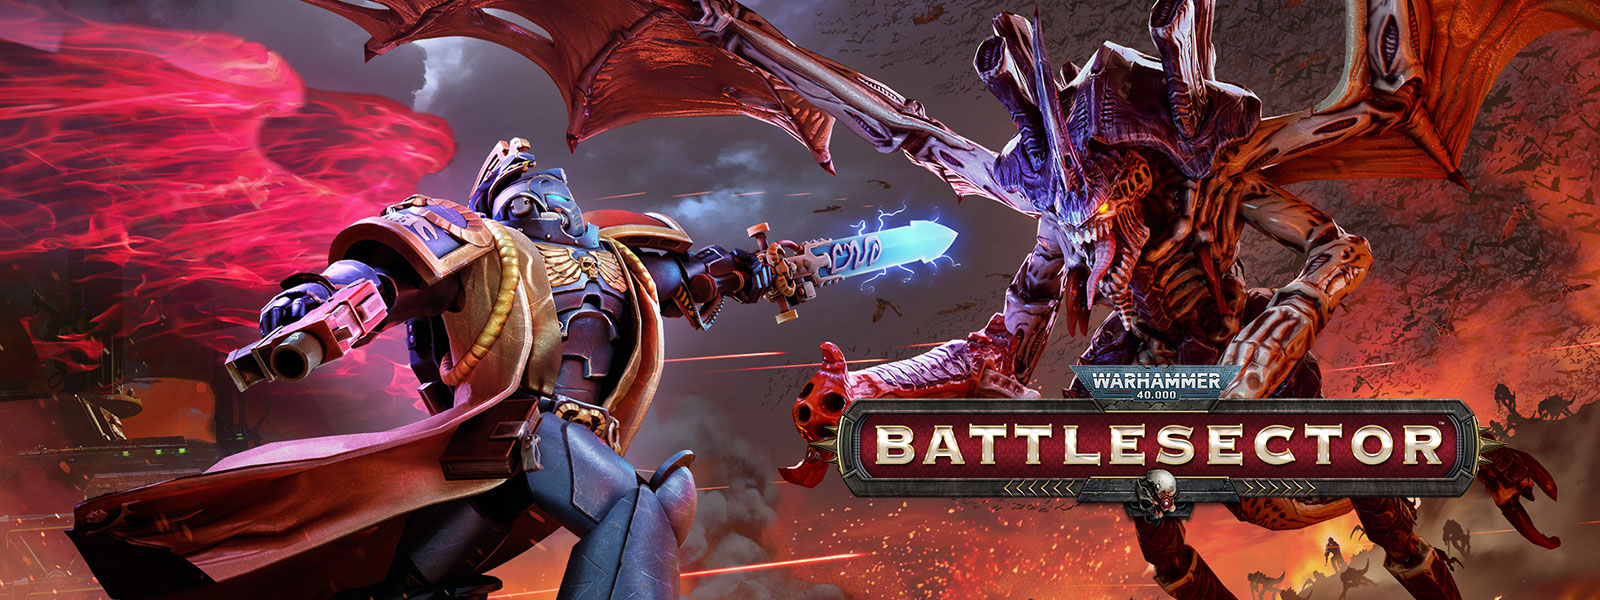 Warhammer 40,000: Battlesector, un Bibliothécaire affronte le Tyran des Ruches au combat.